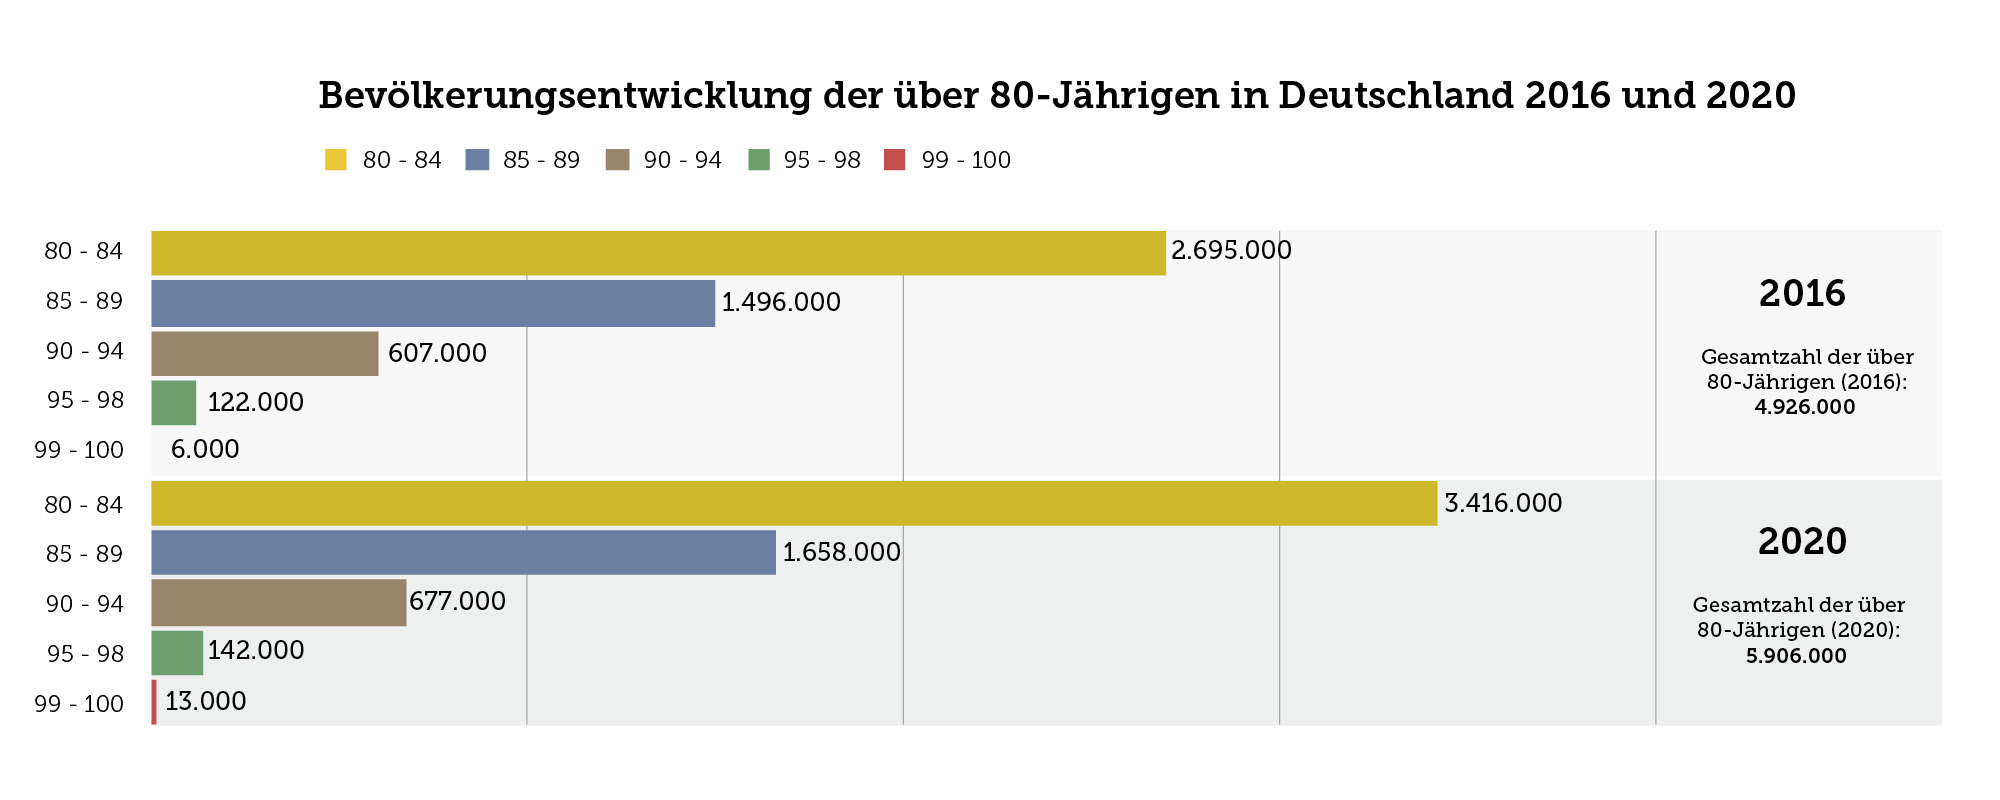 Die Grafik zeigt die Bevölkerungsentwicklung der über 80-Jährigen in Deutschland 2016 und 2020